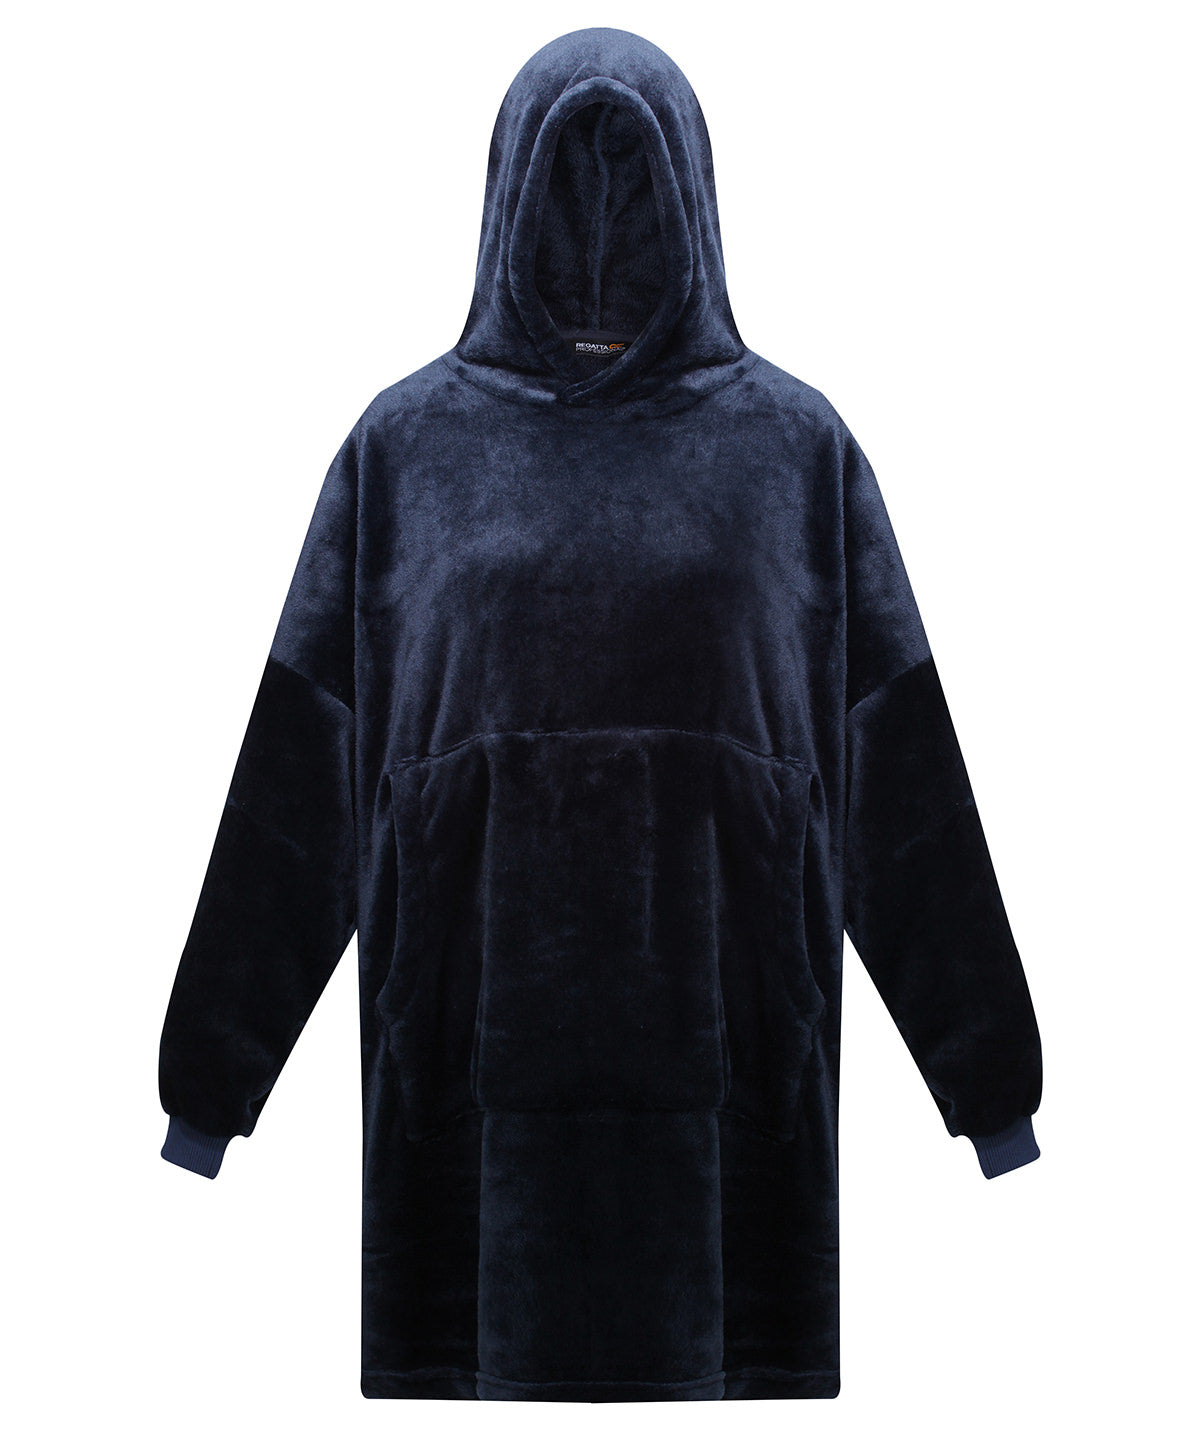 Personalised Hoodies - Navy Regatta Professional Snuggler oversized fleece hoodie